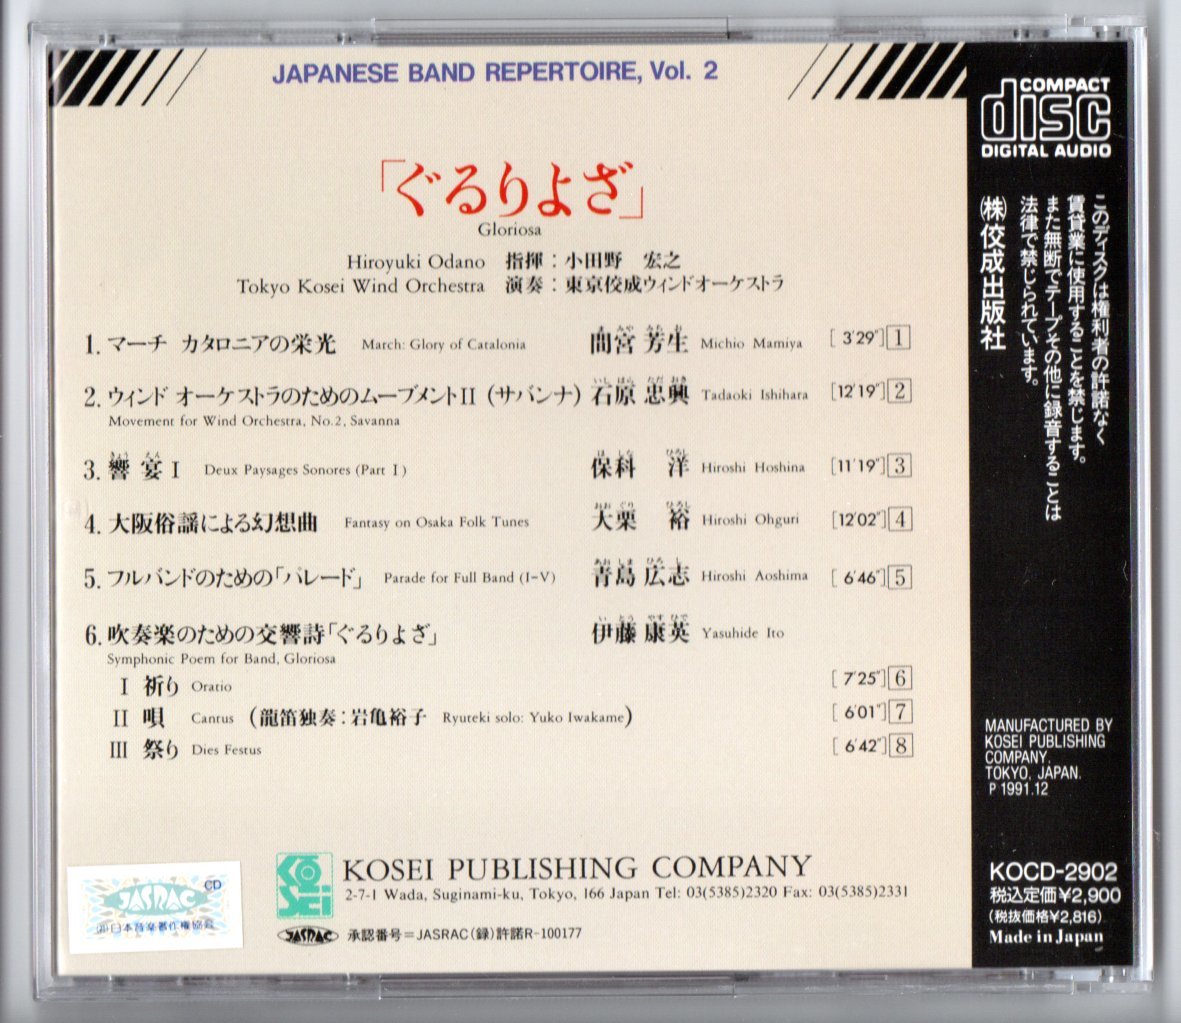  бесплатная доставка духовая музыка CD Tokyo .. окно o-ke -тактный la:...... человек сборник произведений Osaka .. по причине иллюзия . искривление Move men to2 Savanna ..I др. 